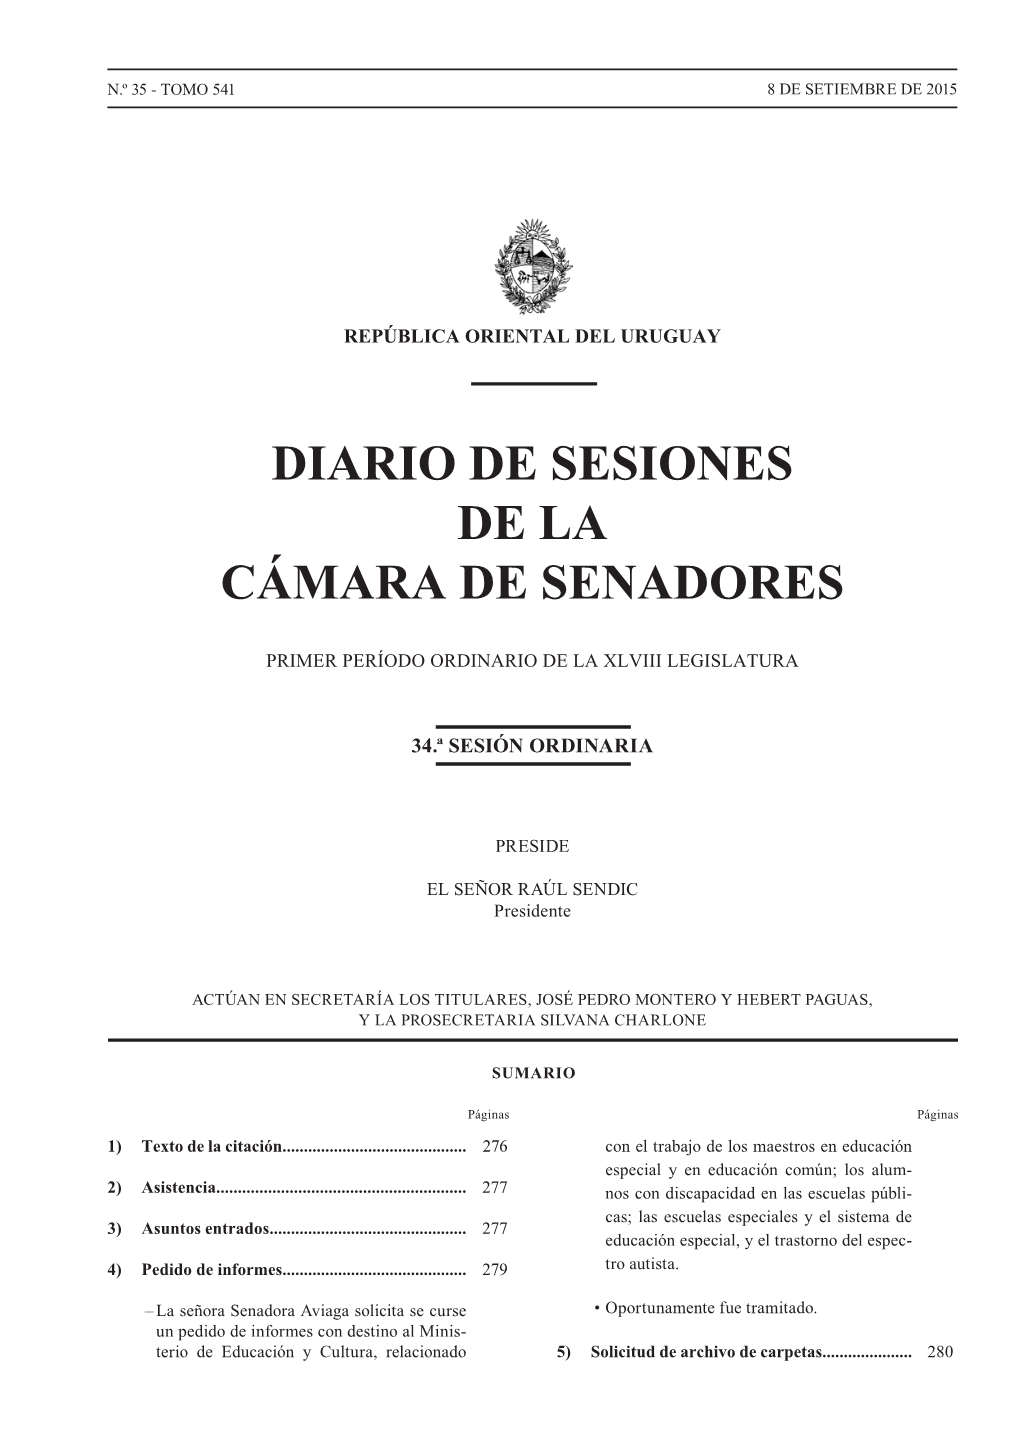 Diario De Sesiones De La Cámara De Senadores